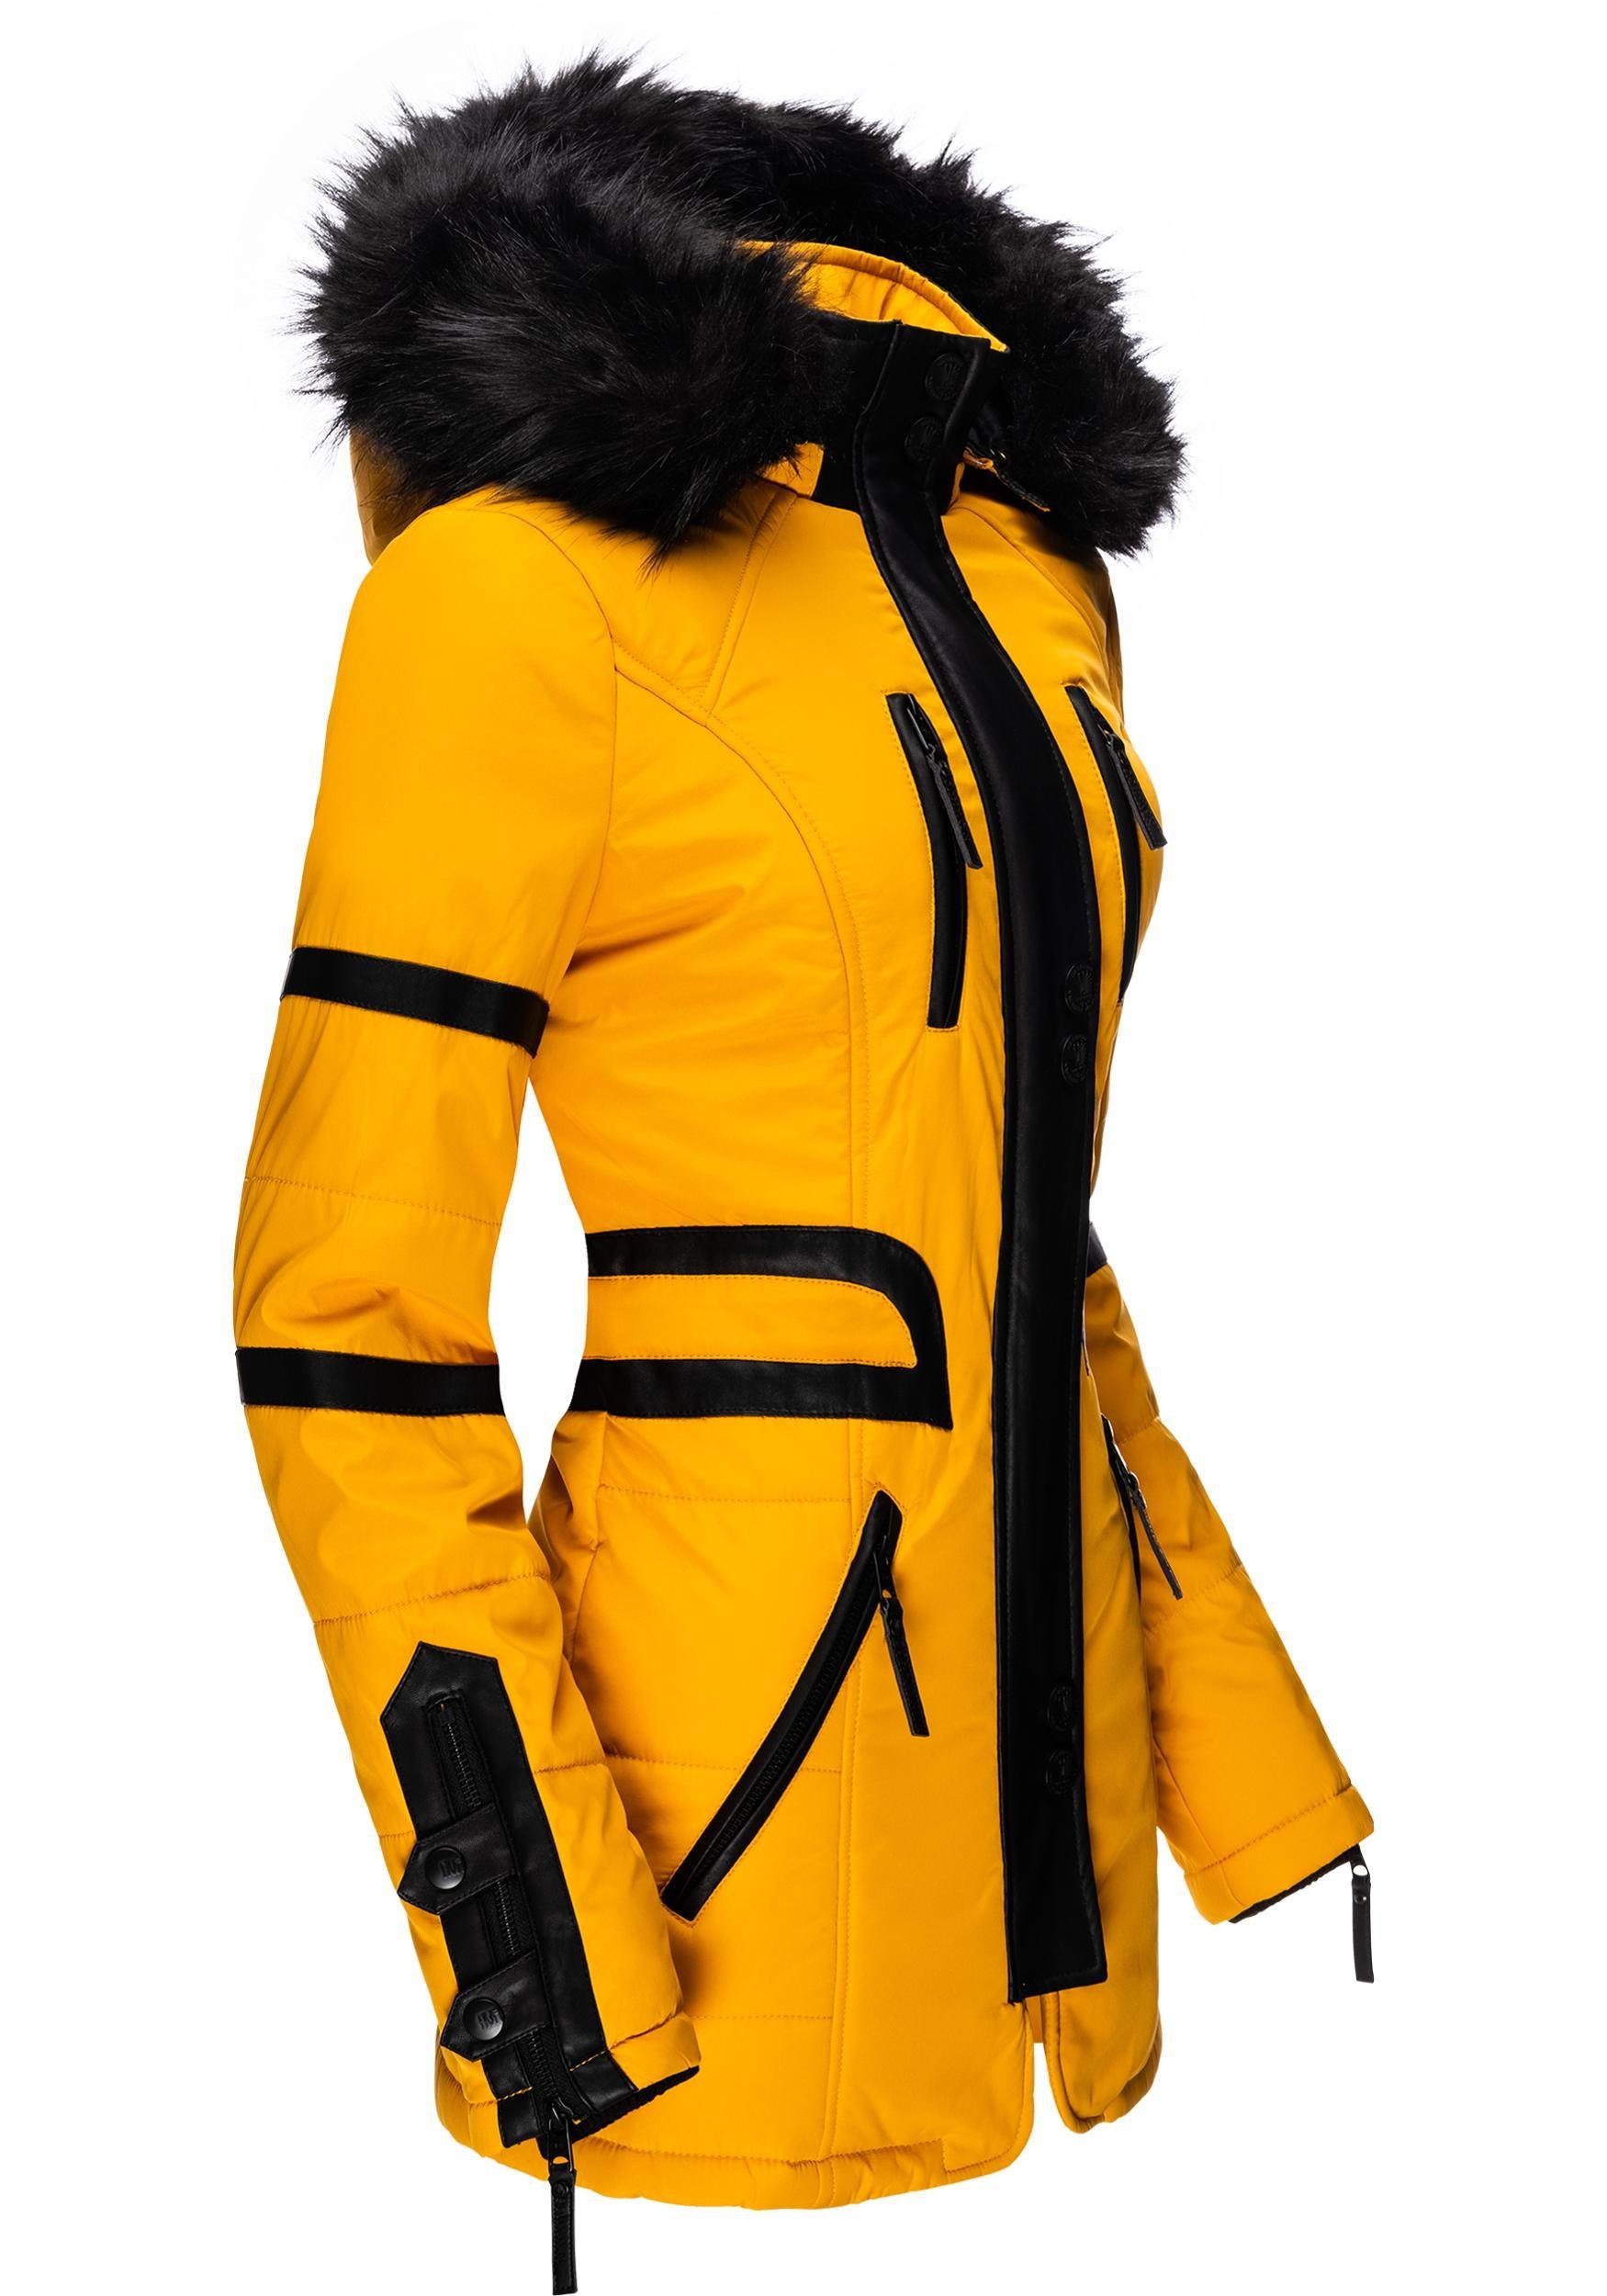 Navahoo Wintermantel Moony stylischer Damen Winter Jacke mit Kapuze,  Taillierte Form macht den Mantel zu echtem Figurschmeichler